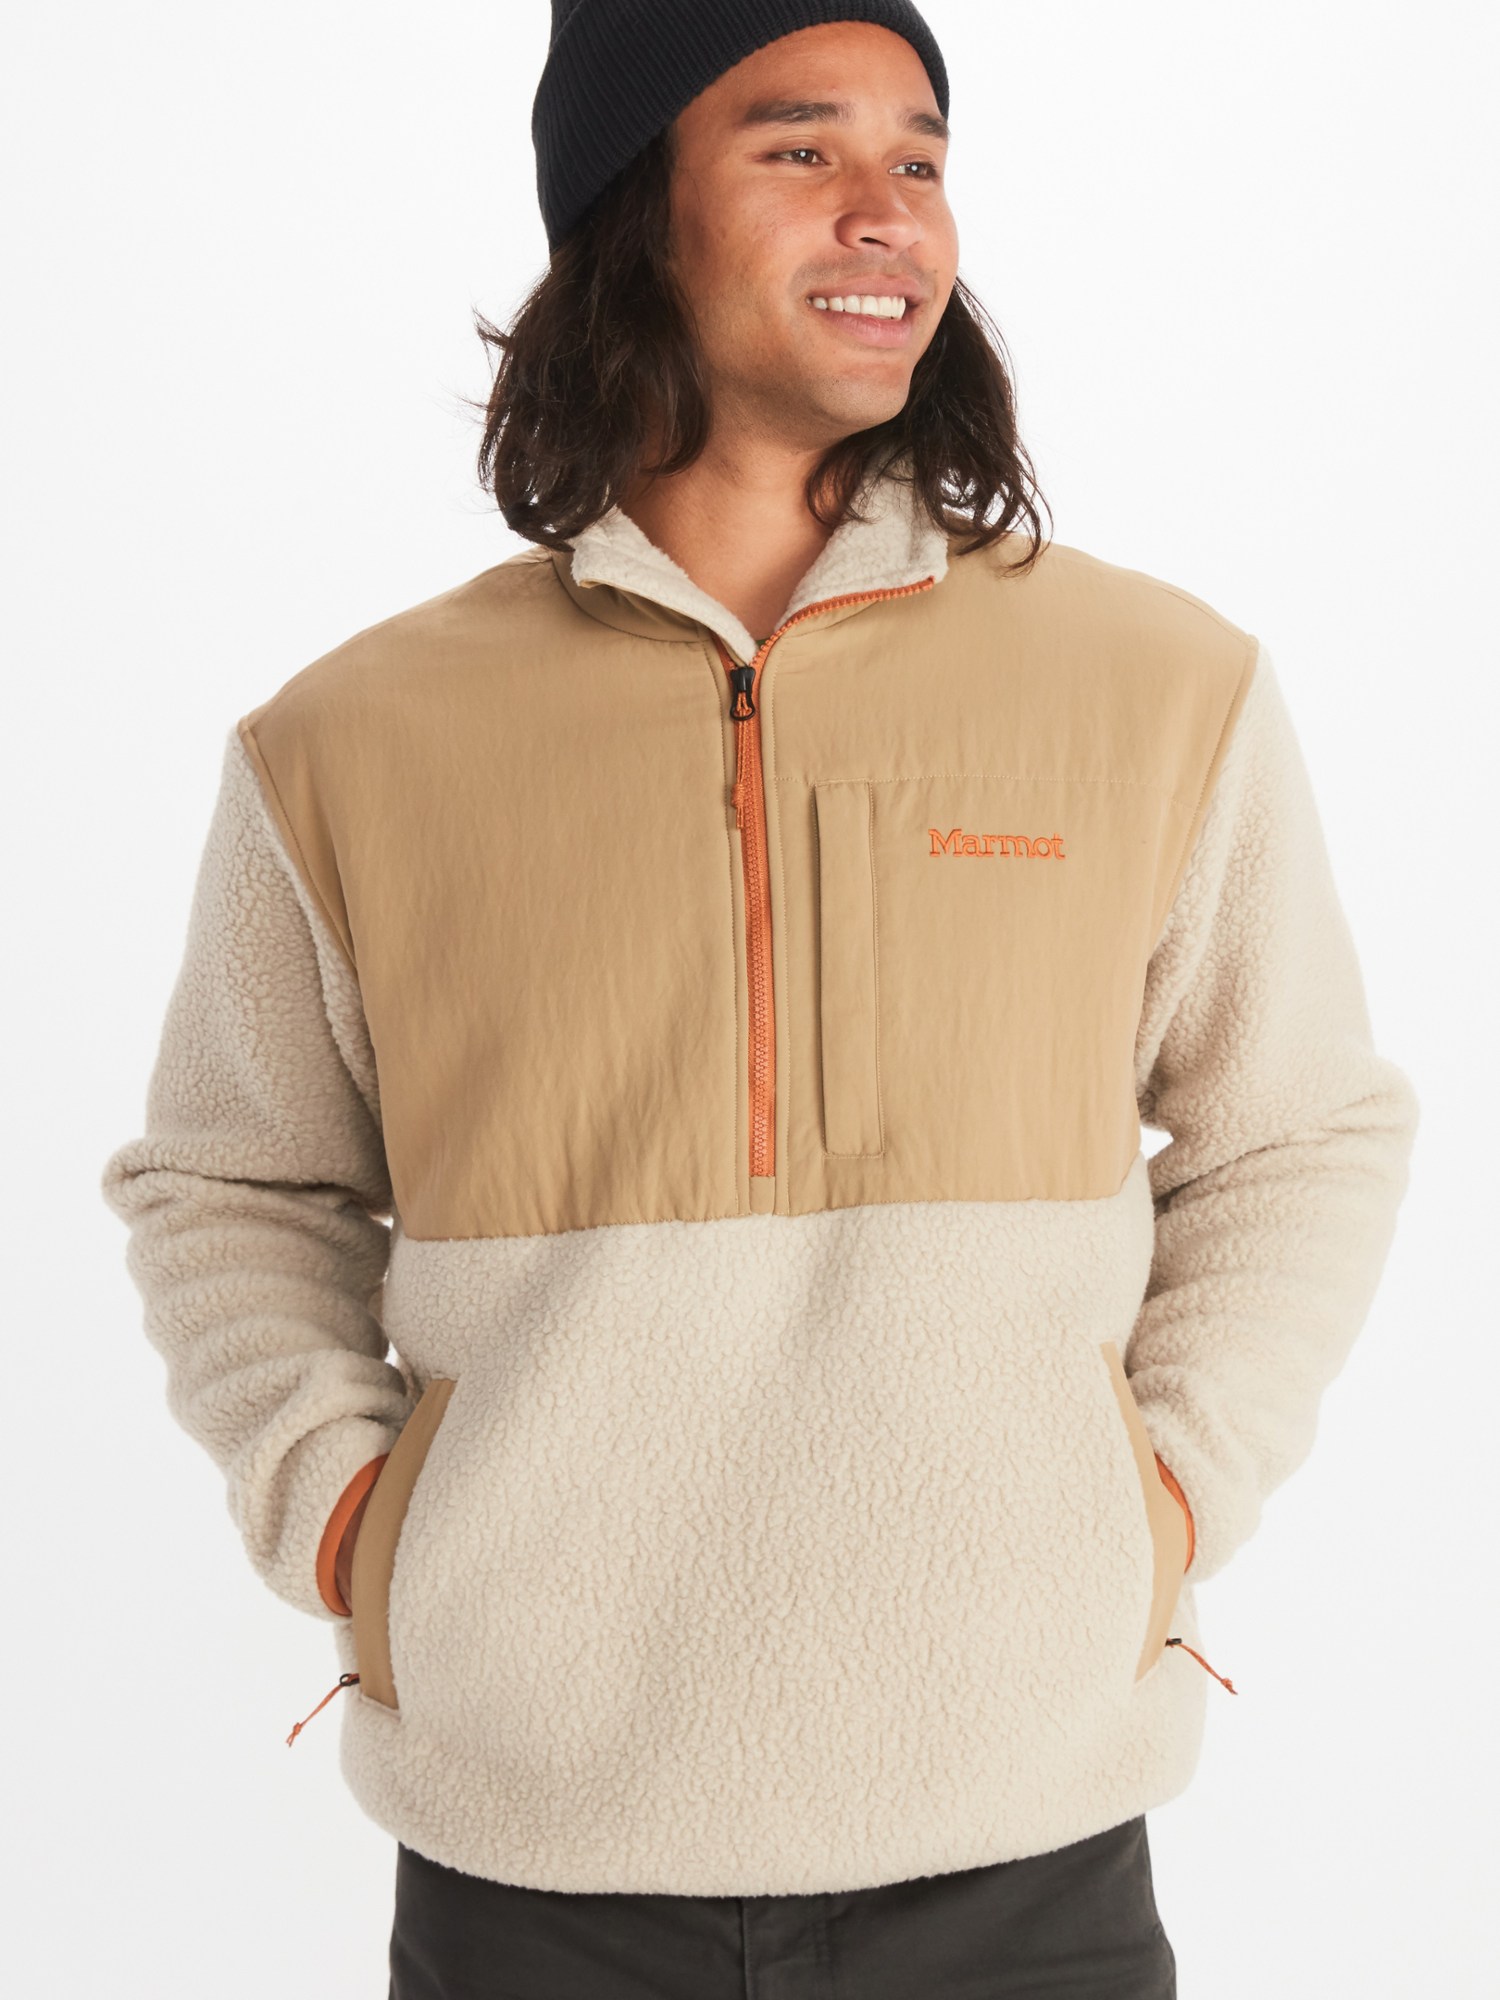 Флисовый пуловер Wiley Polartec с молнией до половины - мужской Marmot, коричневый